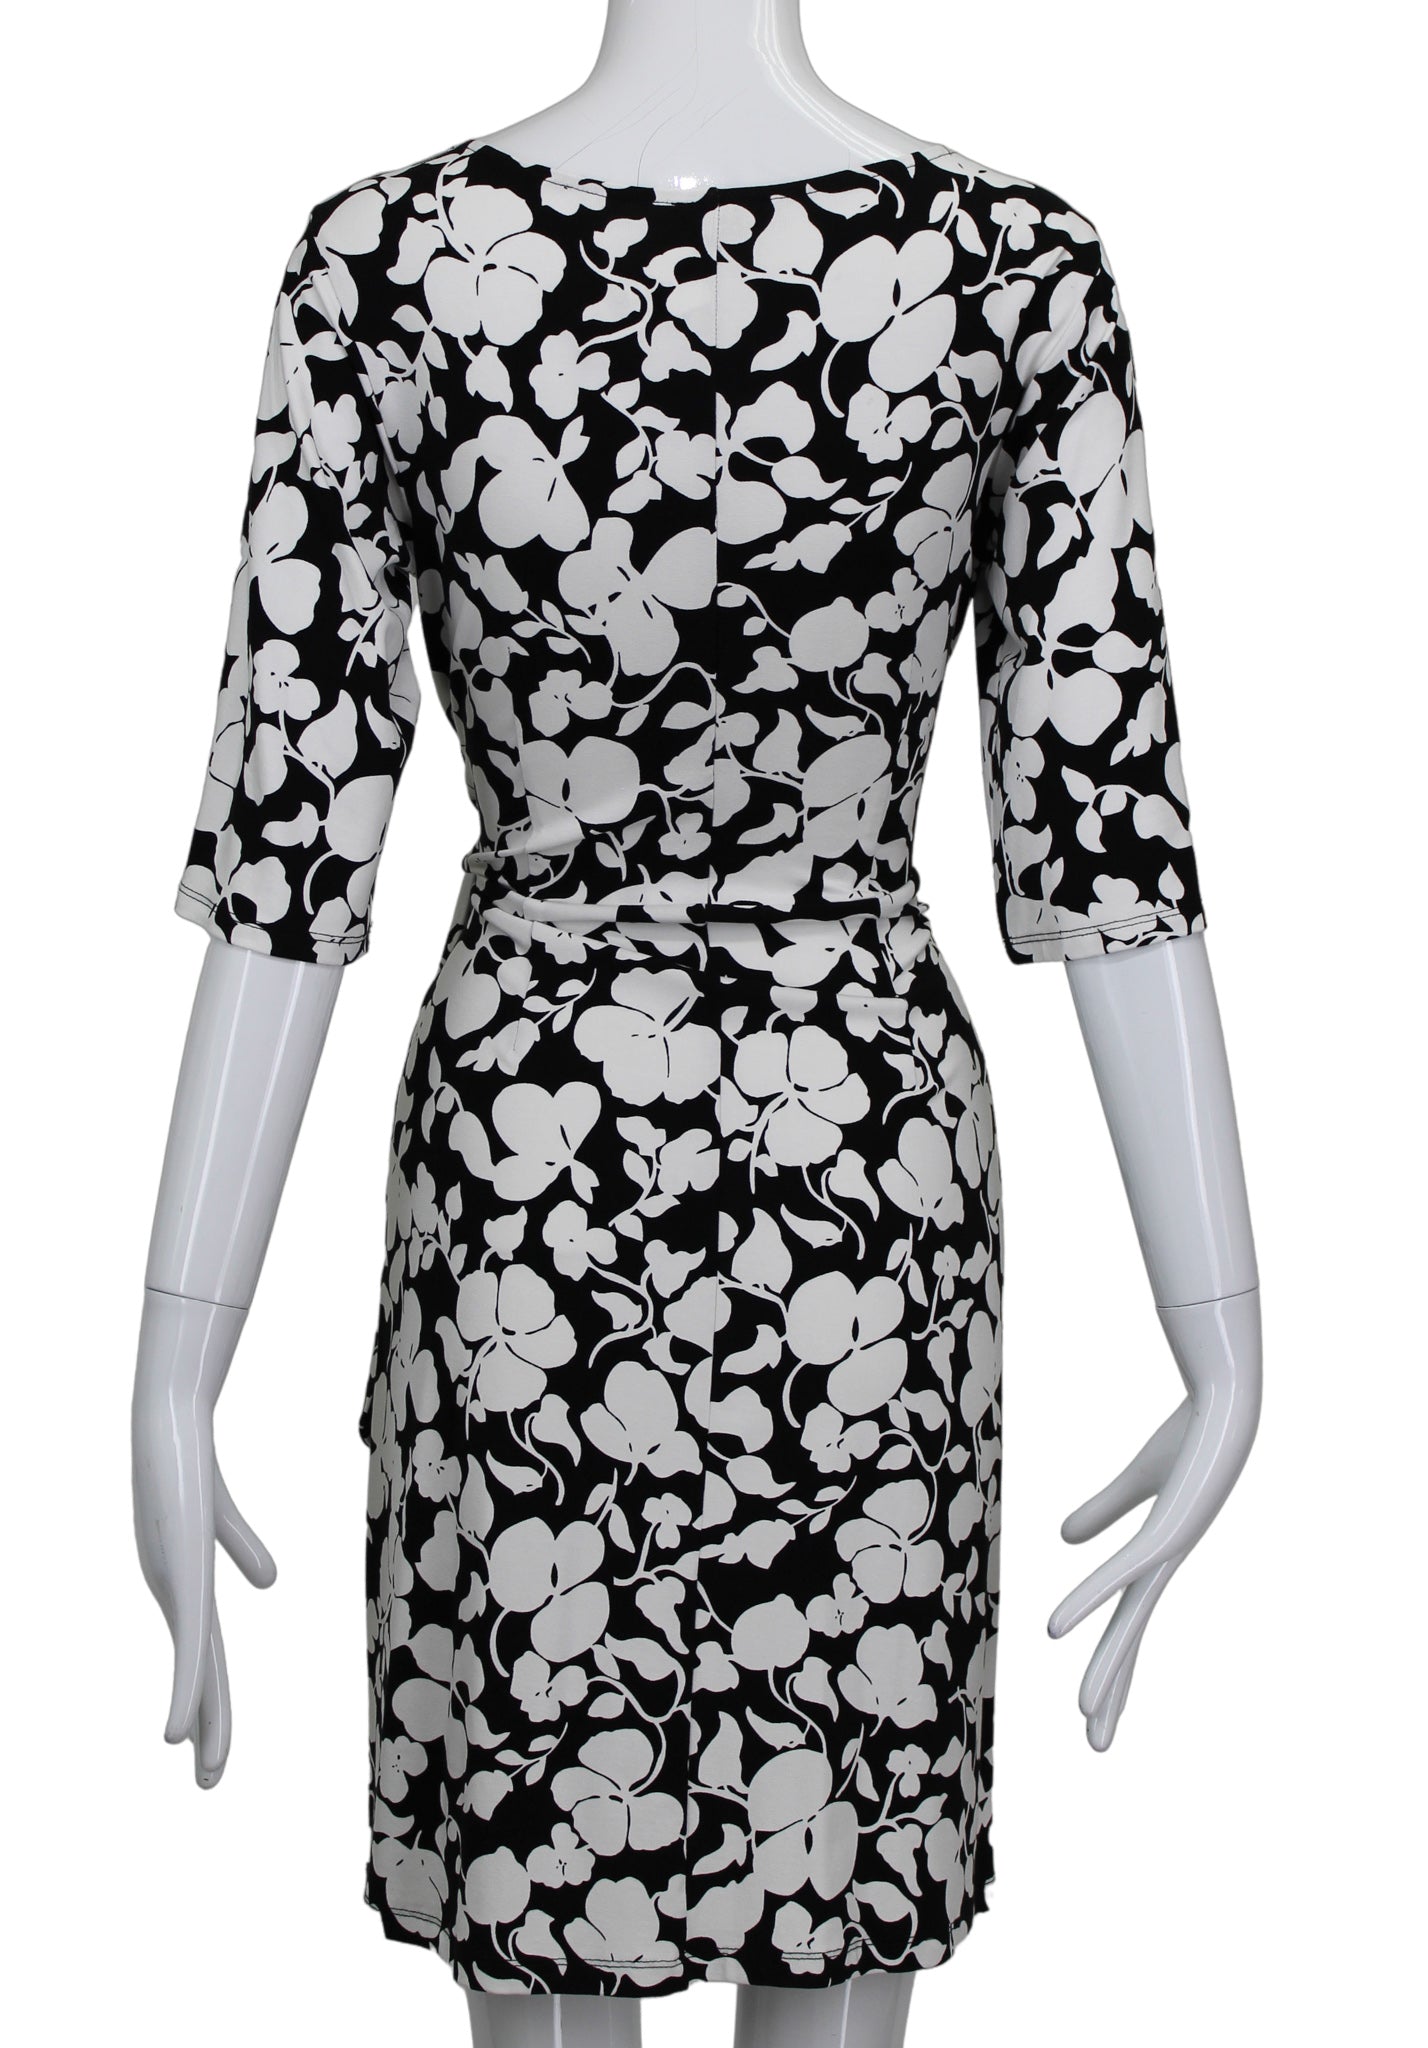 ANN TAYLOR BLACK/WHITE FLORAL DRESS SZ 2